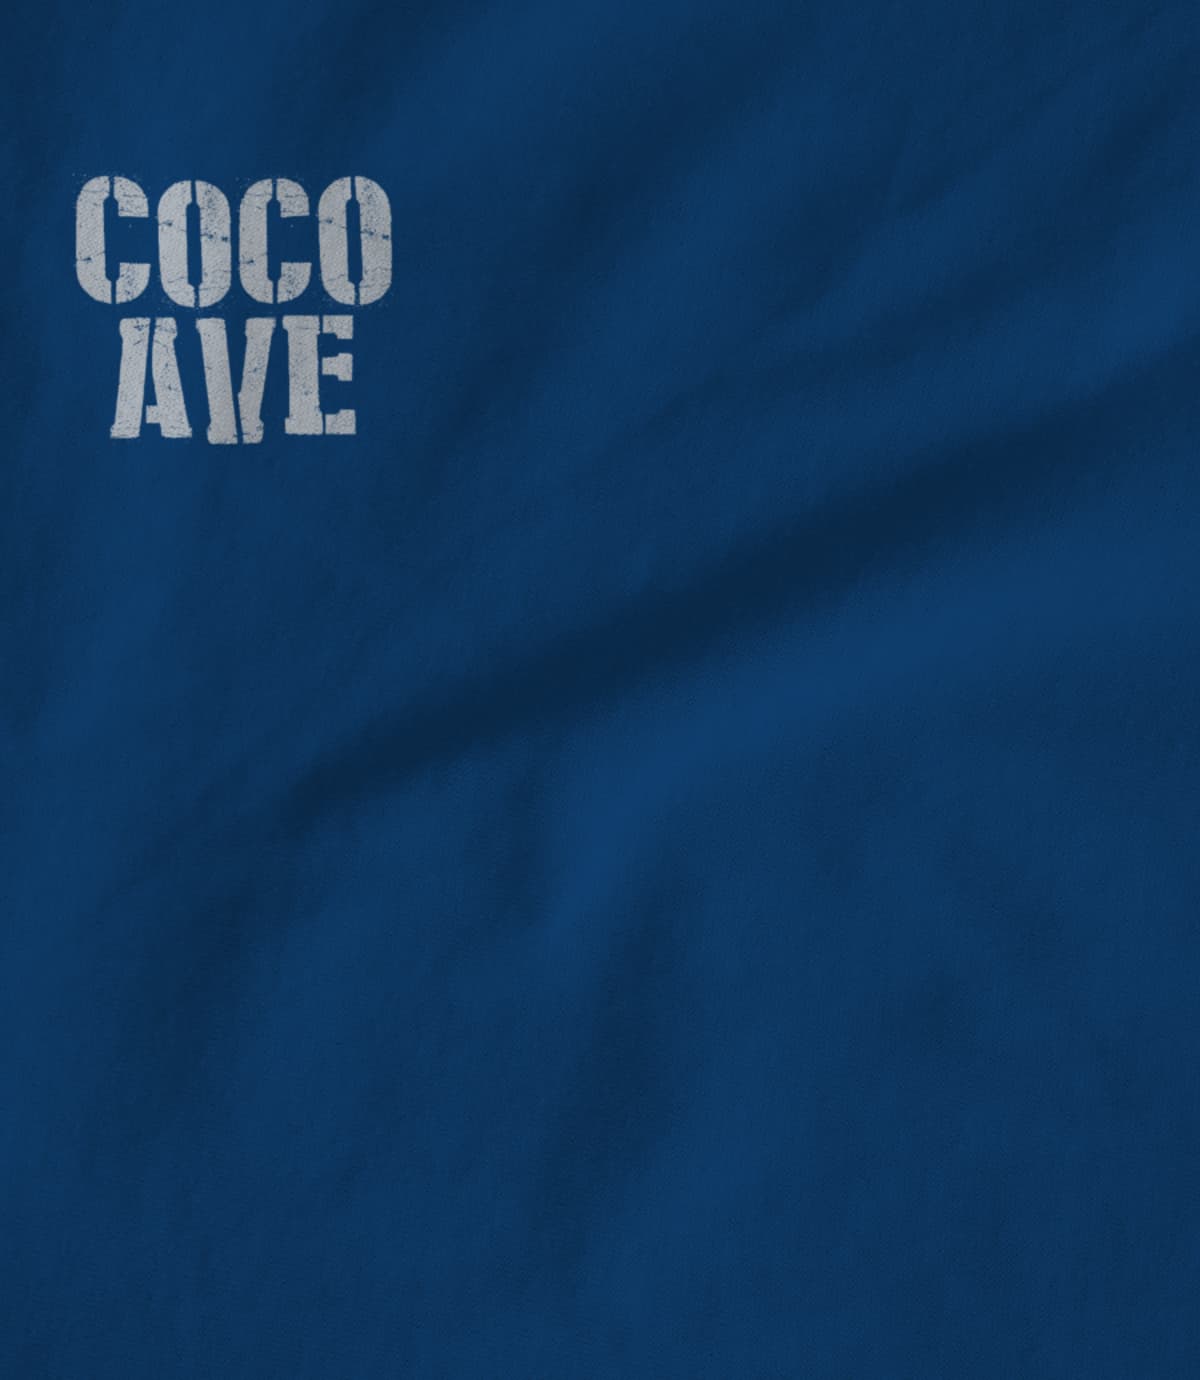 Coco Avenue